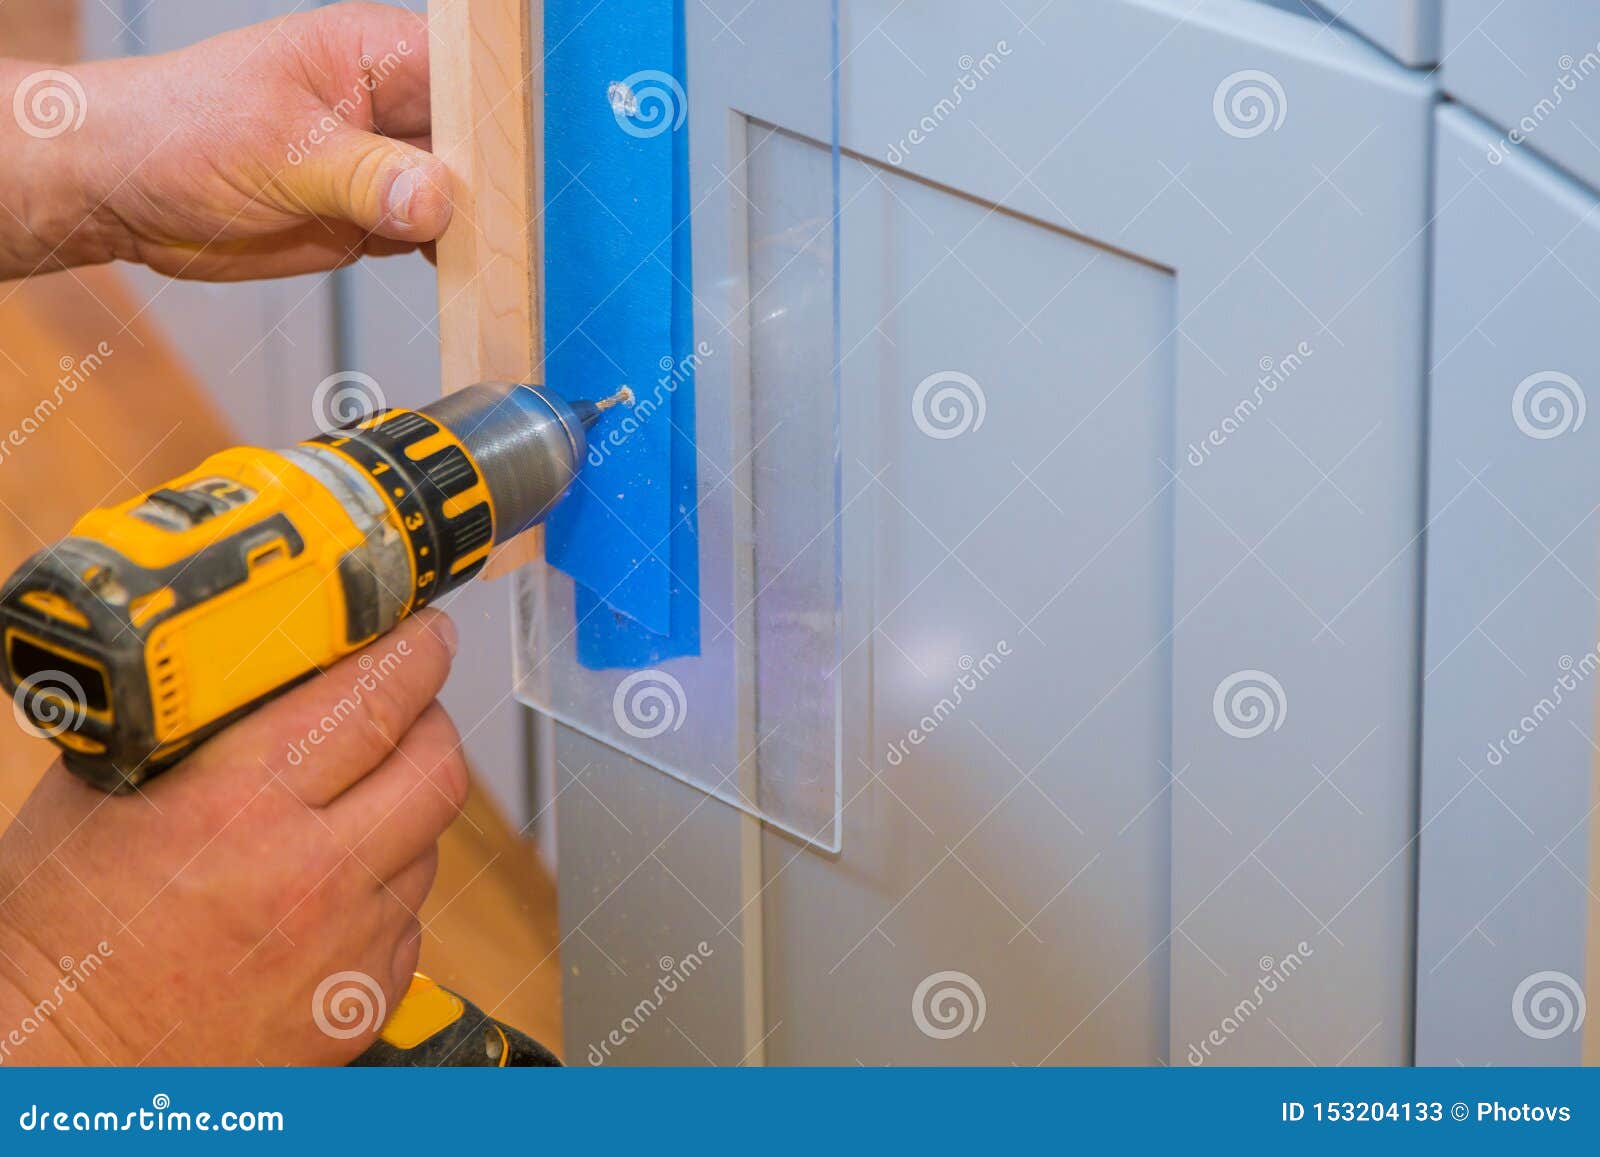 Master Drills The Cabinet Door In The Cabinet Door Stock Image